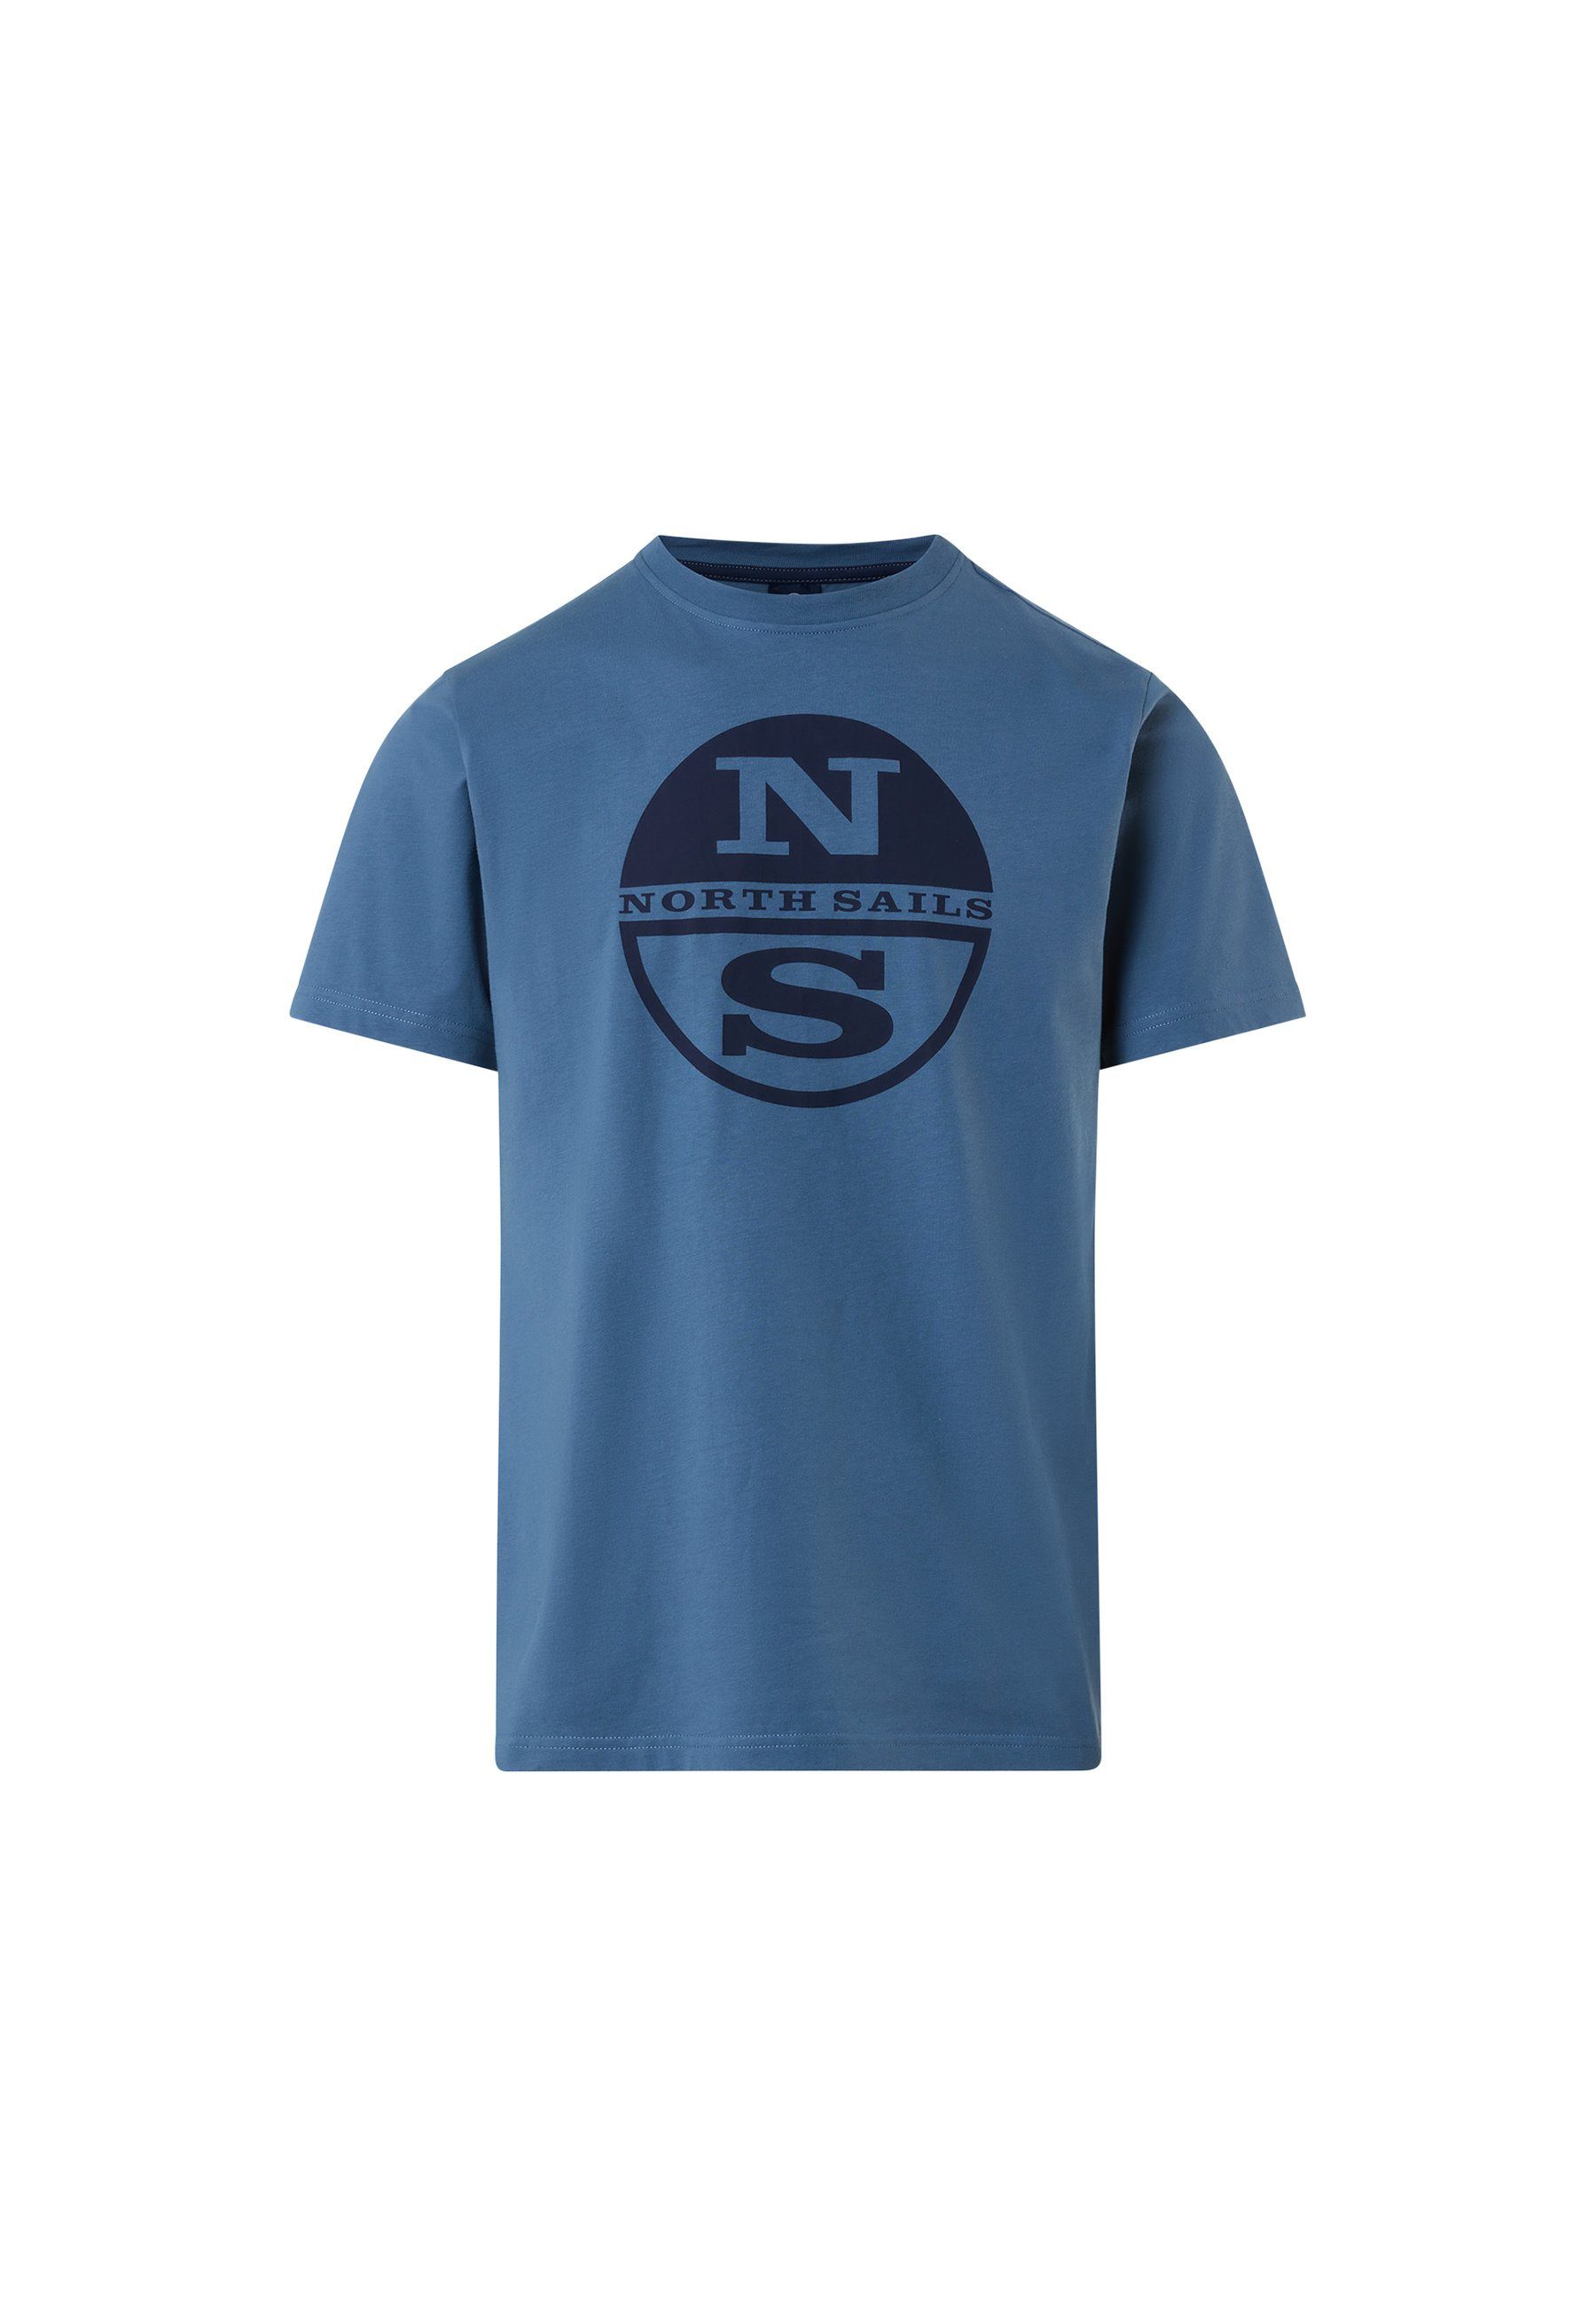 T-Shirt klassischem Sails T-Shirt North Design Logo-Druck blau mit mit